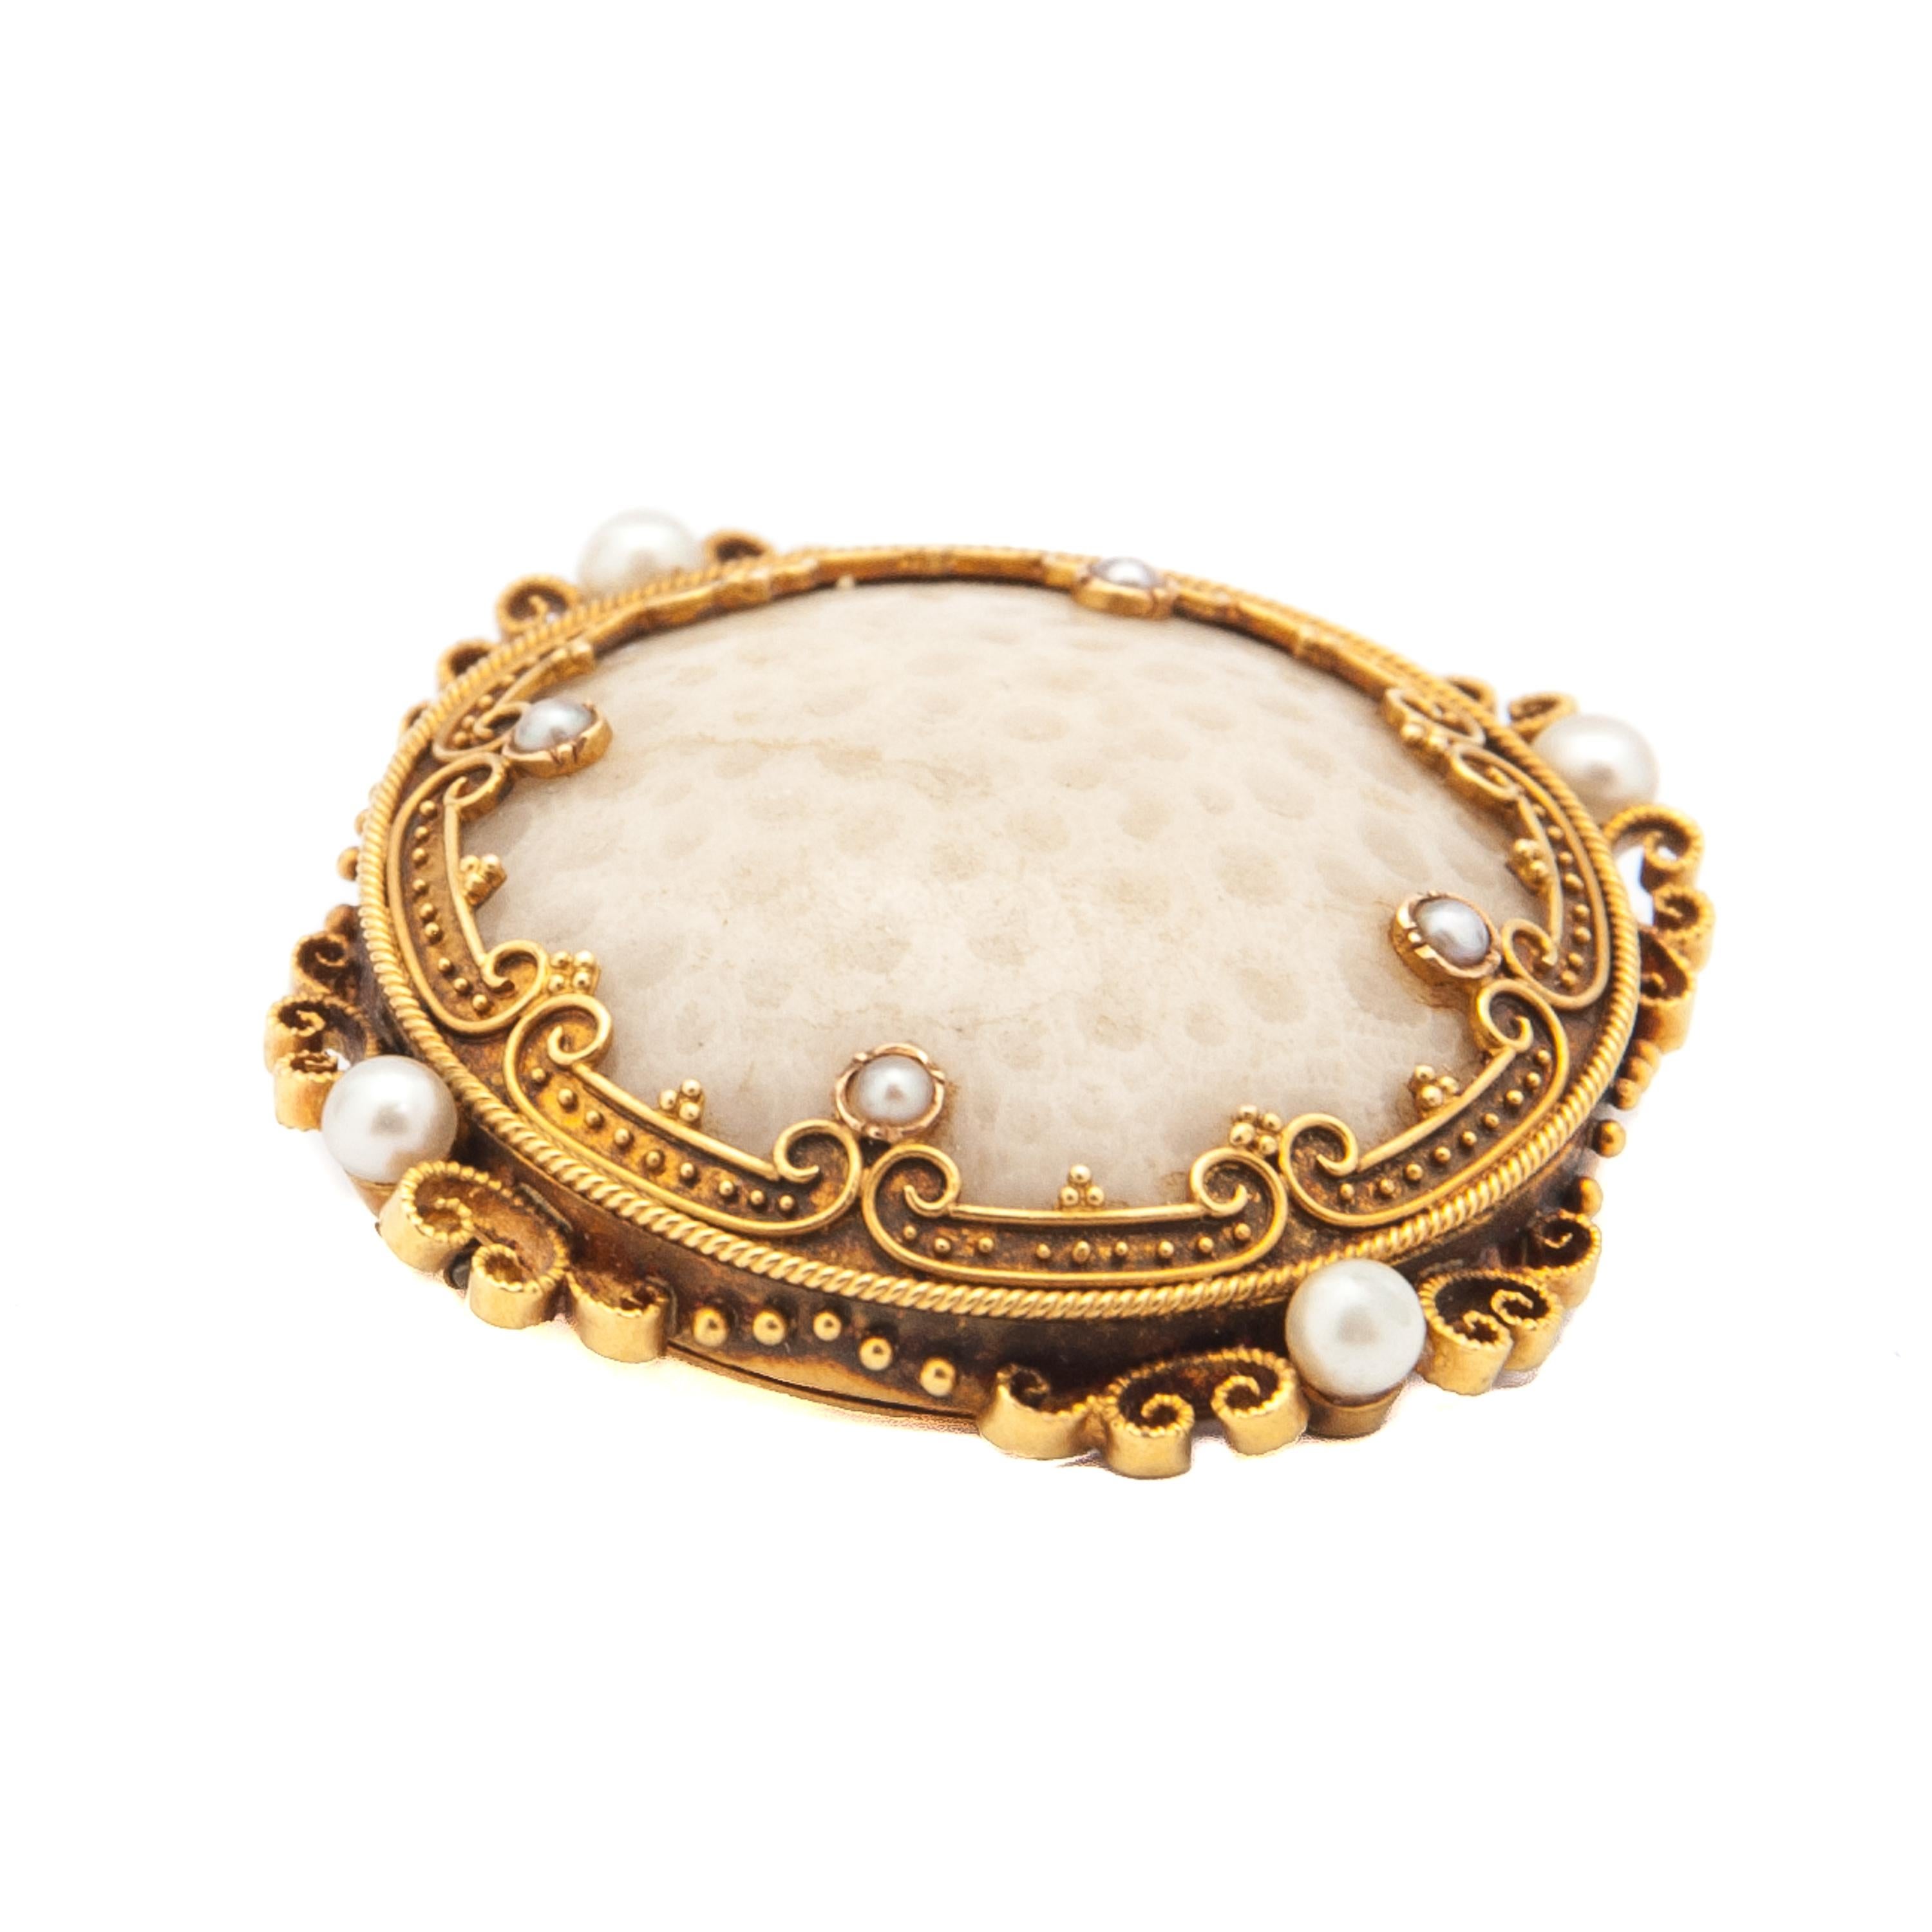 Dies ist eine antike Brosche aus versteinerter weißer Koralle aus dem 19. Jahrhundert, besetzt mit acht Saatperlen. Die versteinerten Korallen und Perlen sind in einen rund gearbeiteten Rahmen aus 18 Karat Gold gefasst. Der Rahmen der Brosche ist